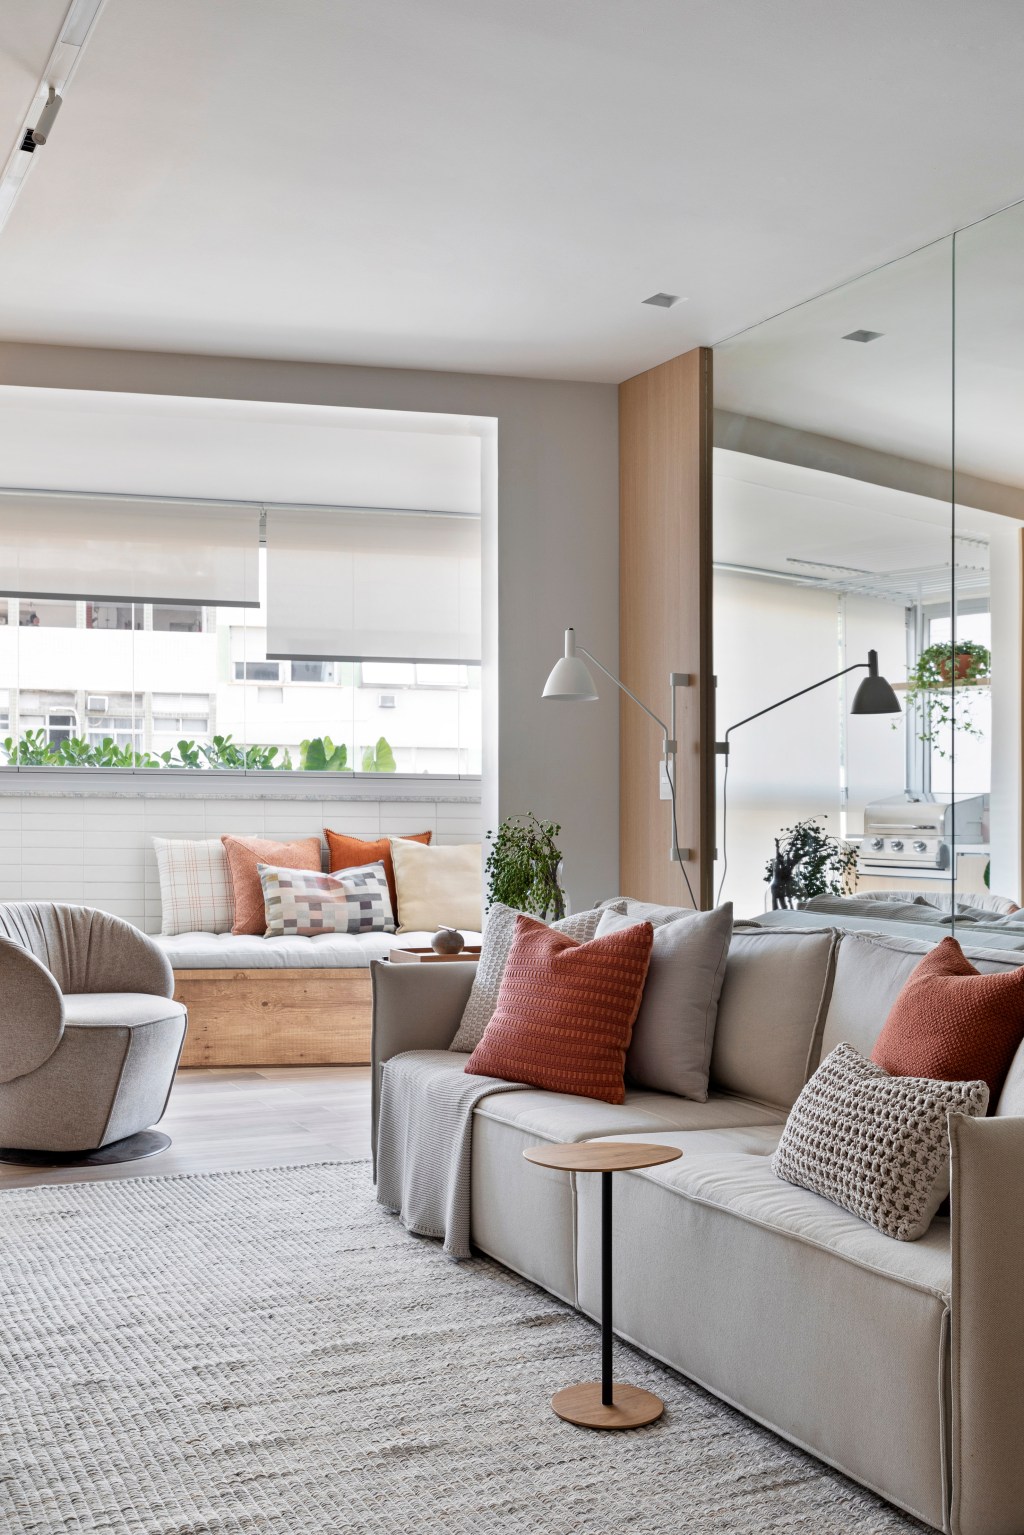 Apartamento de 70 m² parece maior com décor em tons neutros. Projeto de Fabiano Ravaglia. Na foto, sala de estar com sofá e parede espelhada.